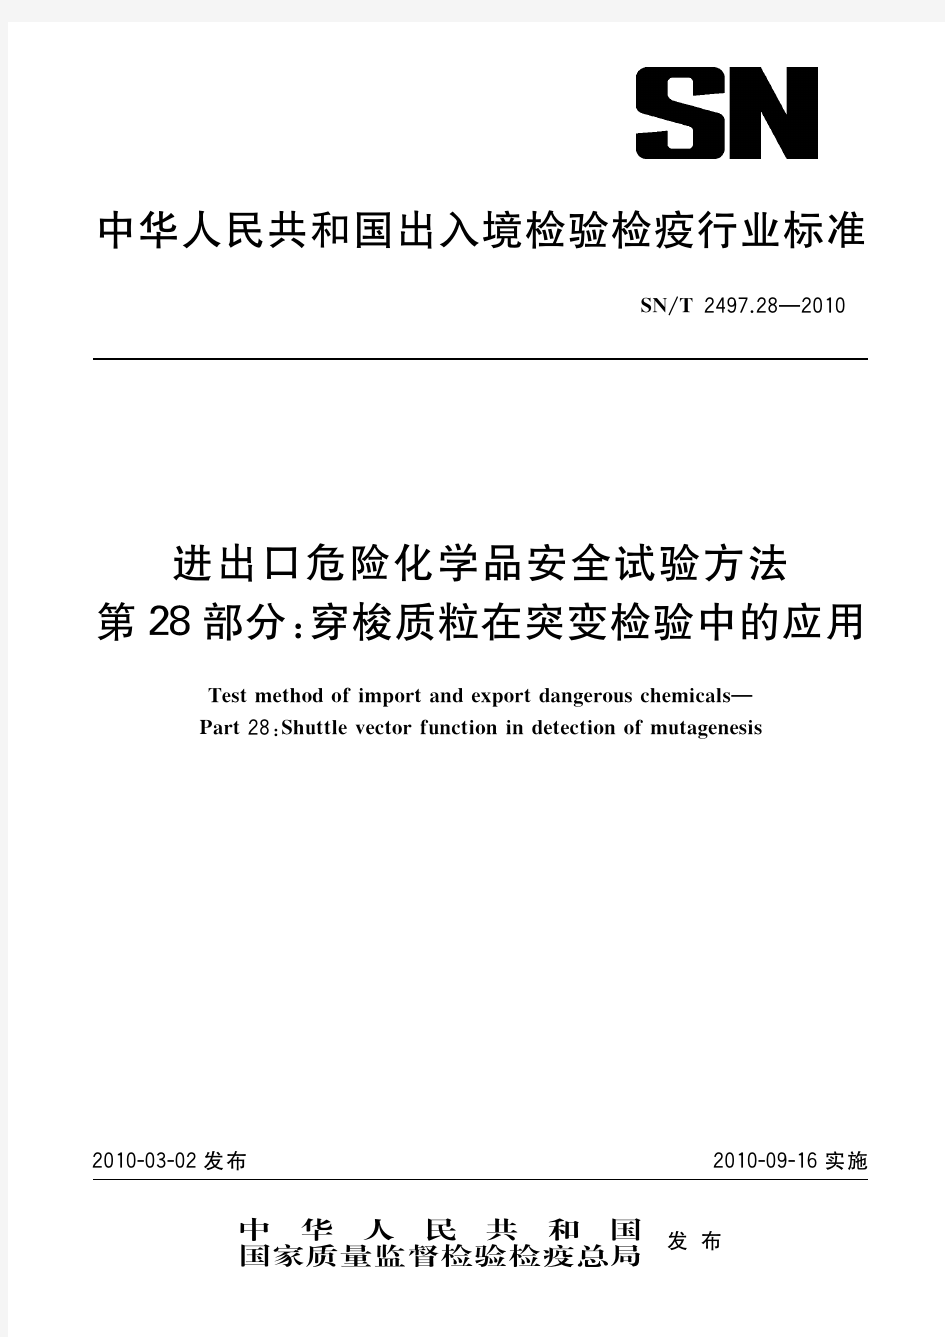 中华人民共和国出入境检验检疫行业标准